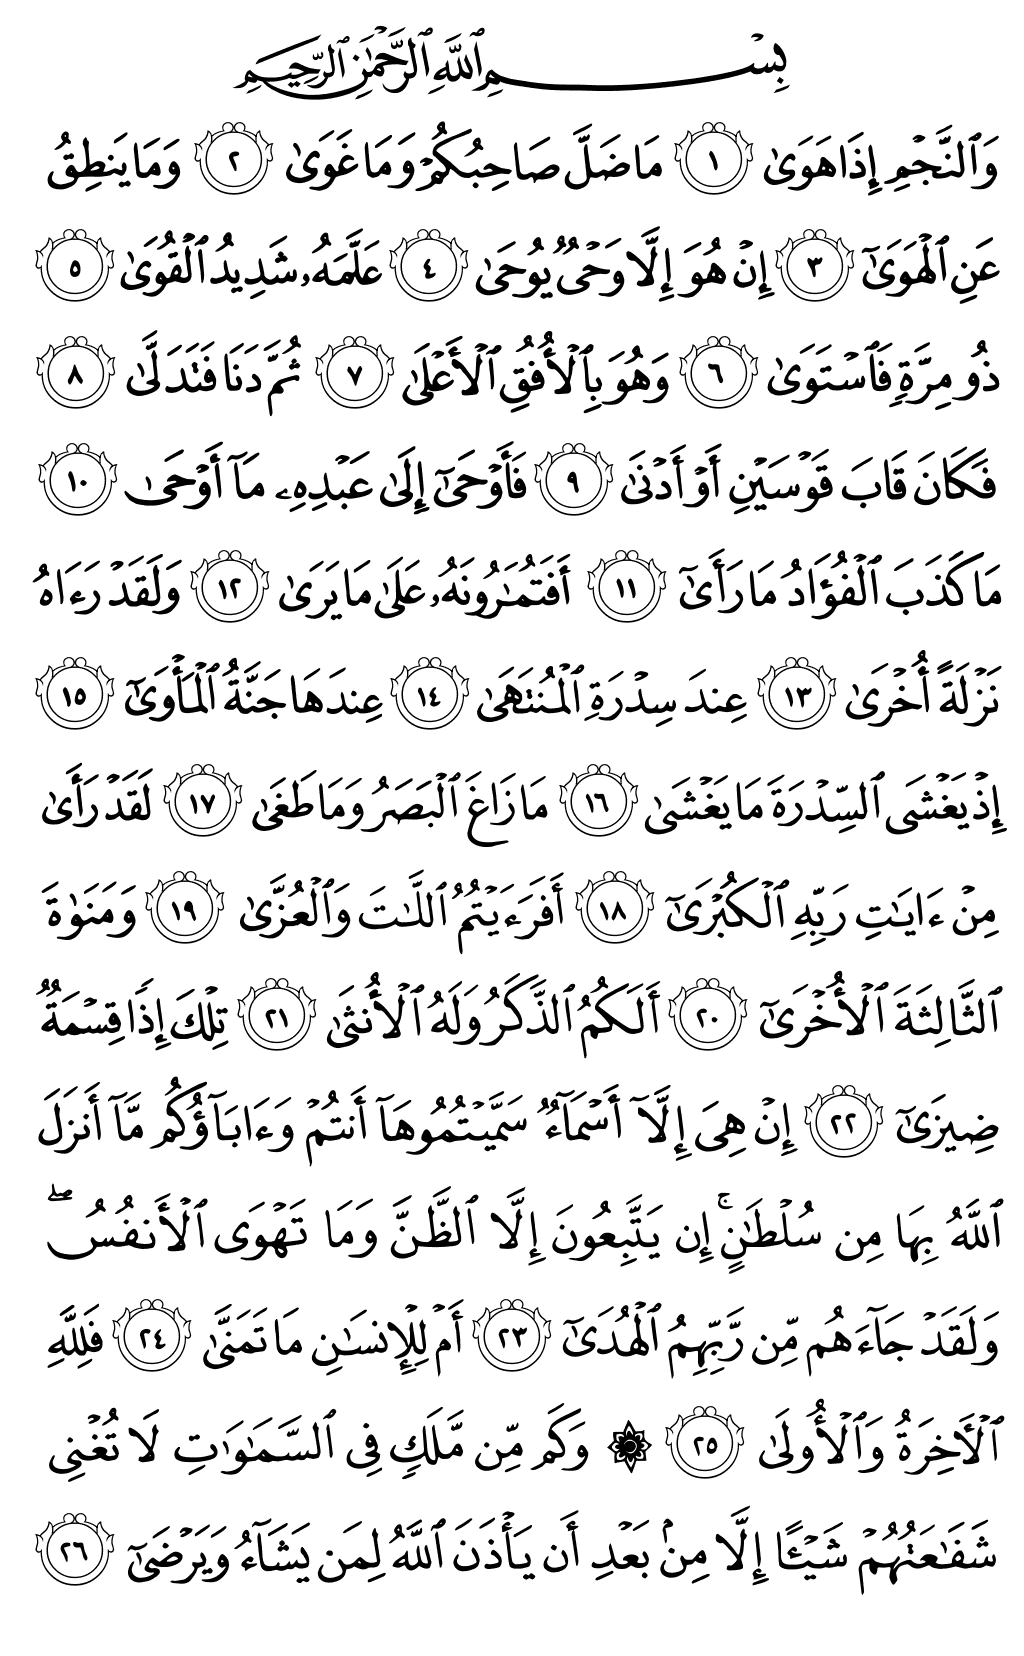 الصفحة رقم 526 من القرآن الكريم